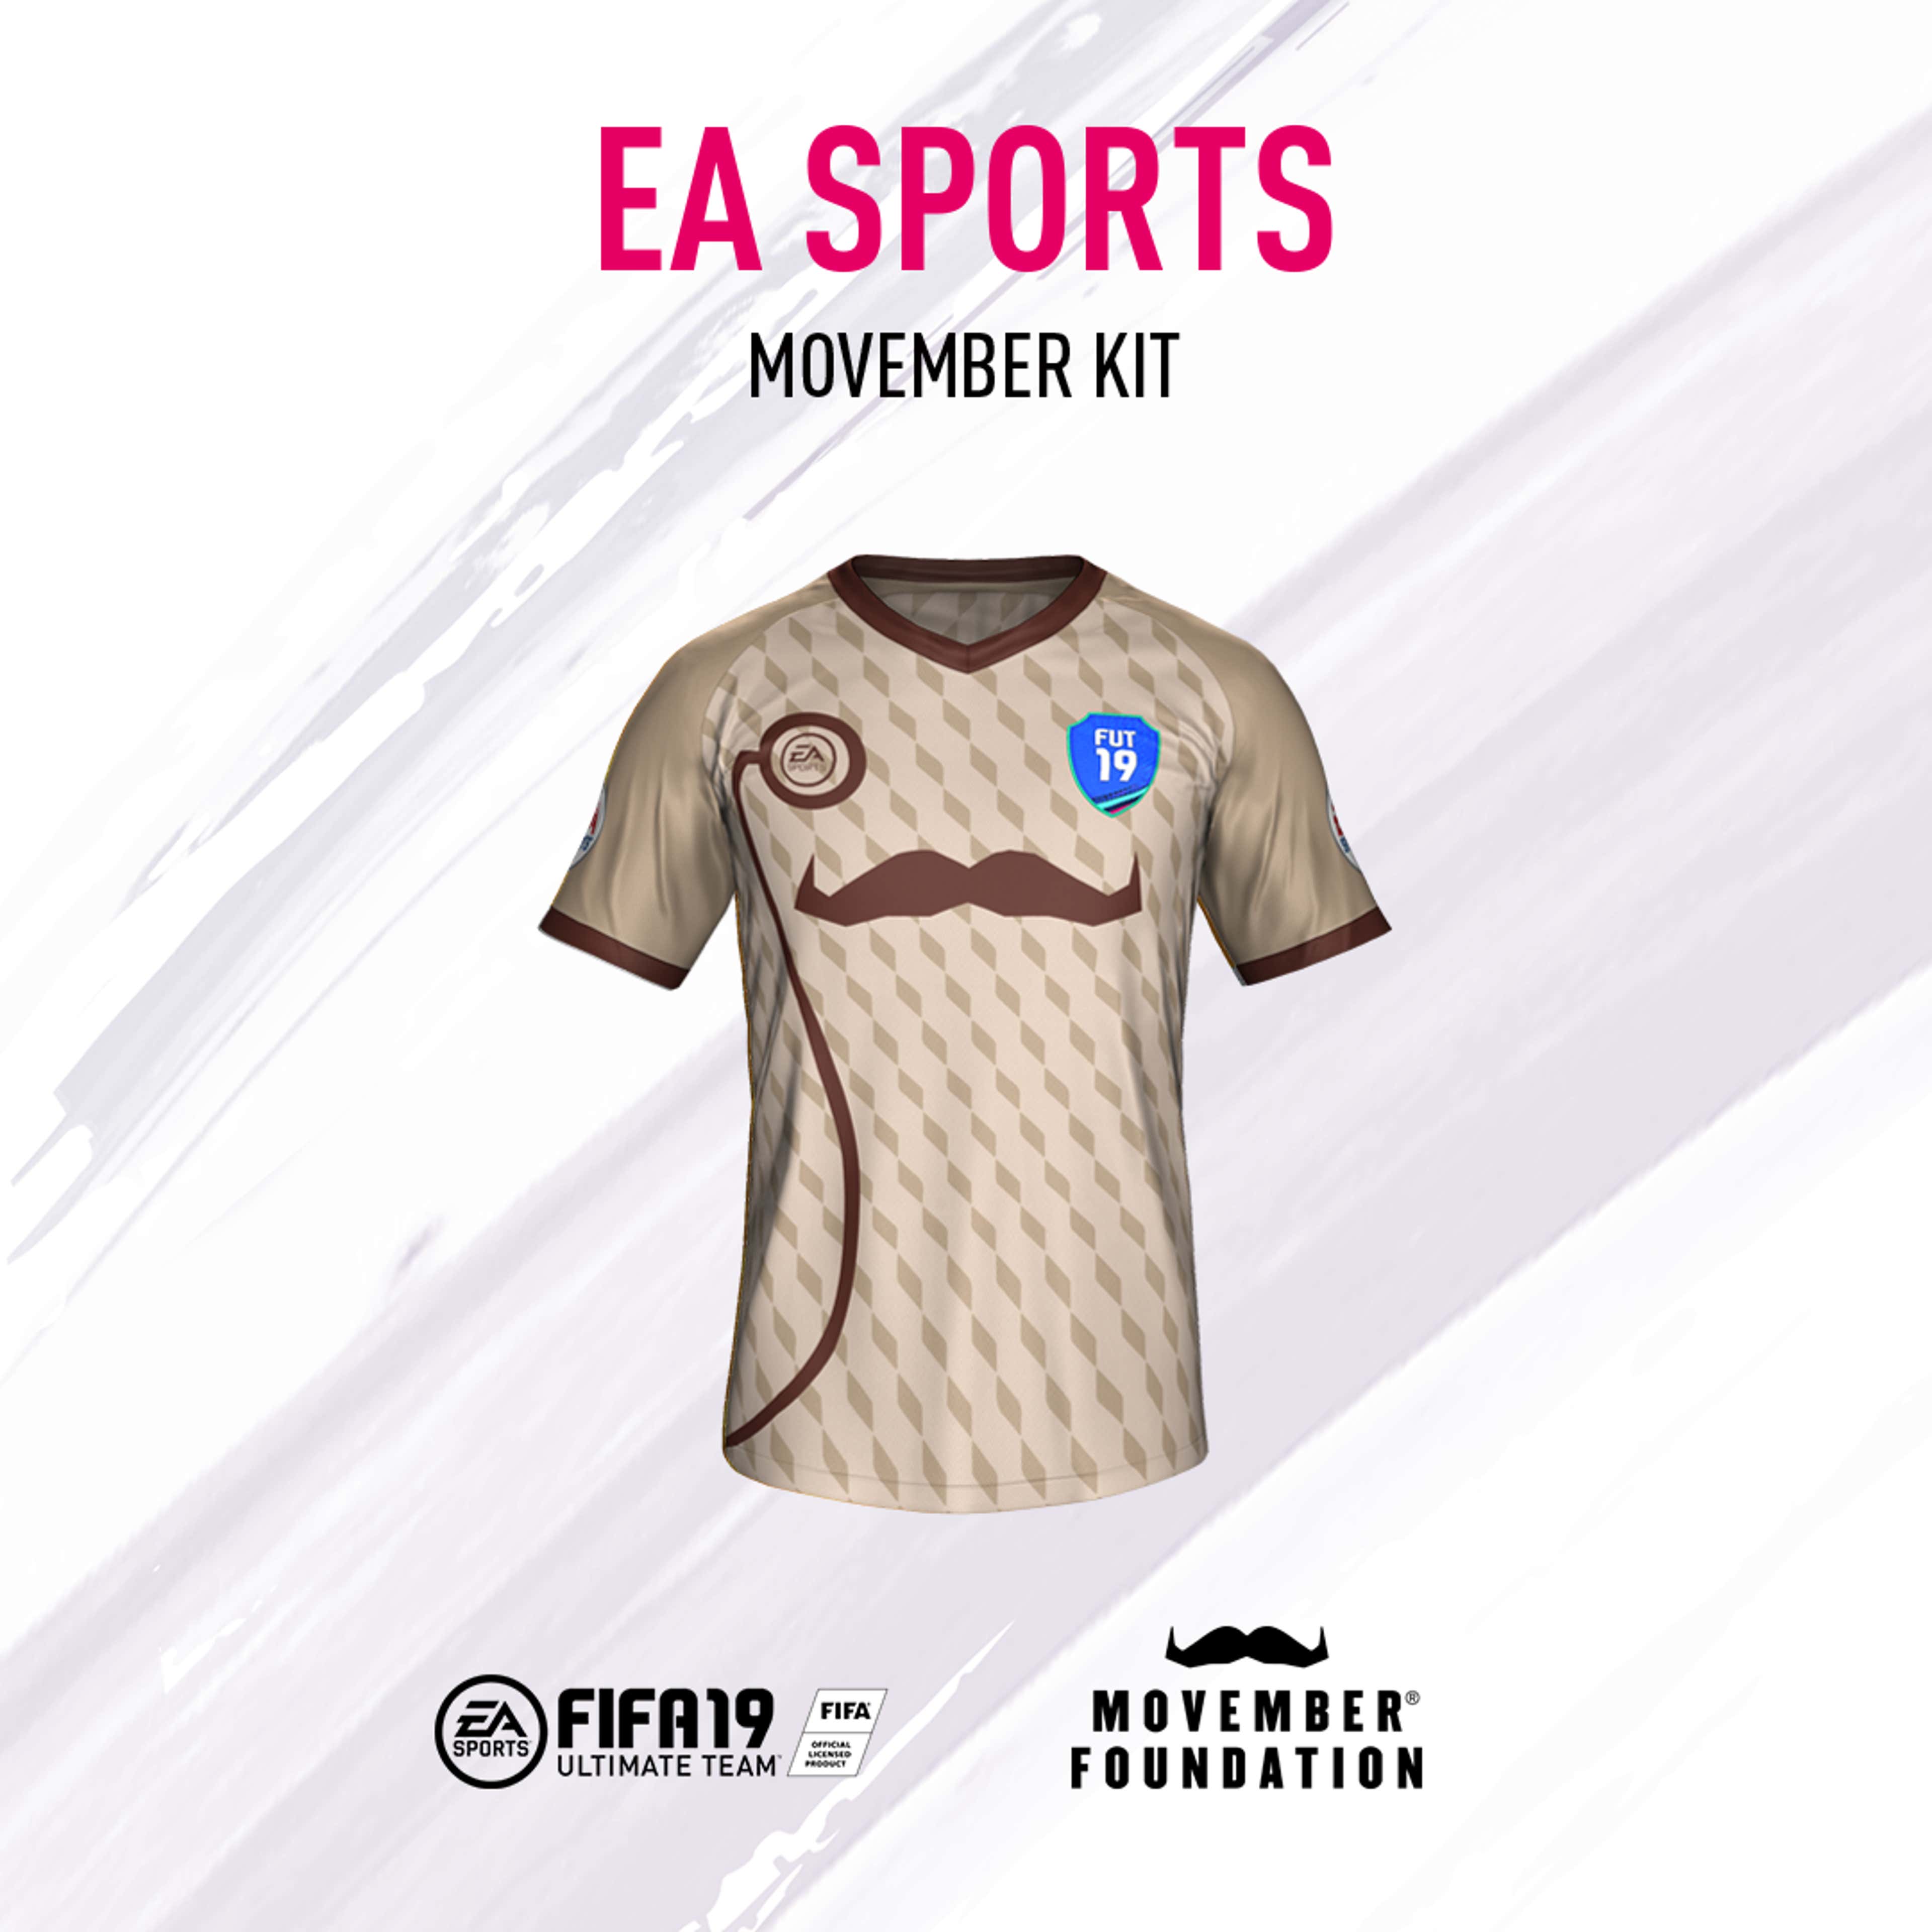 FIFA19 Movember kit